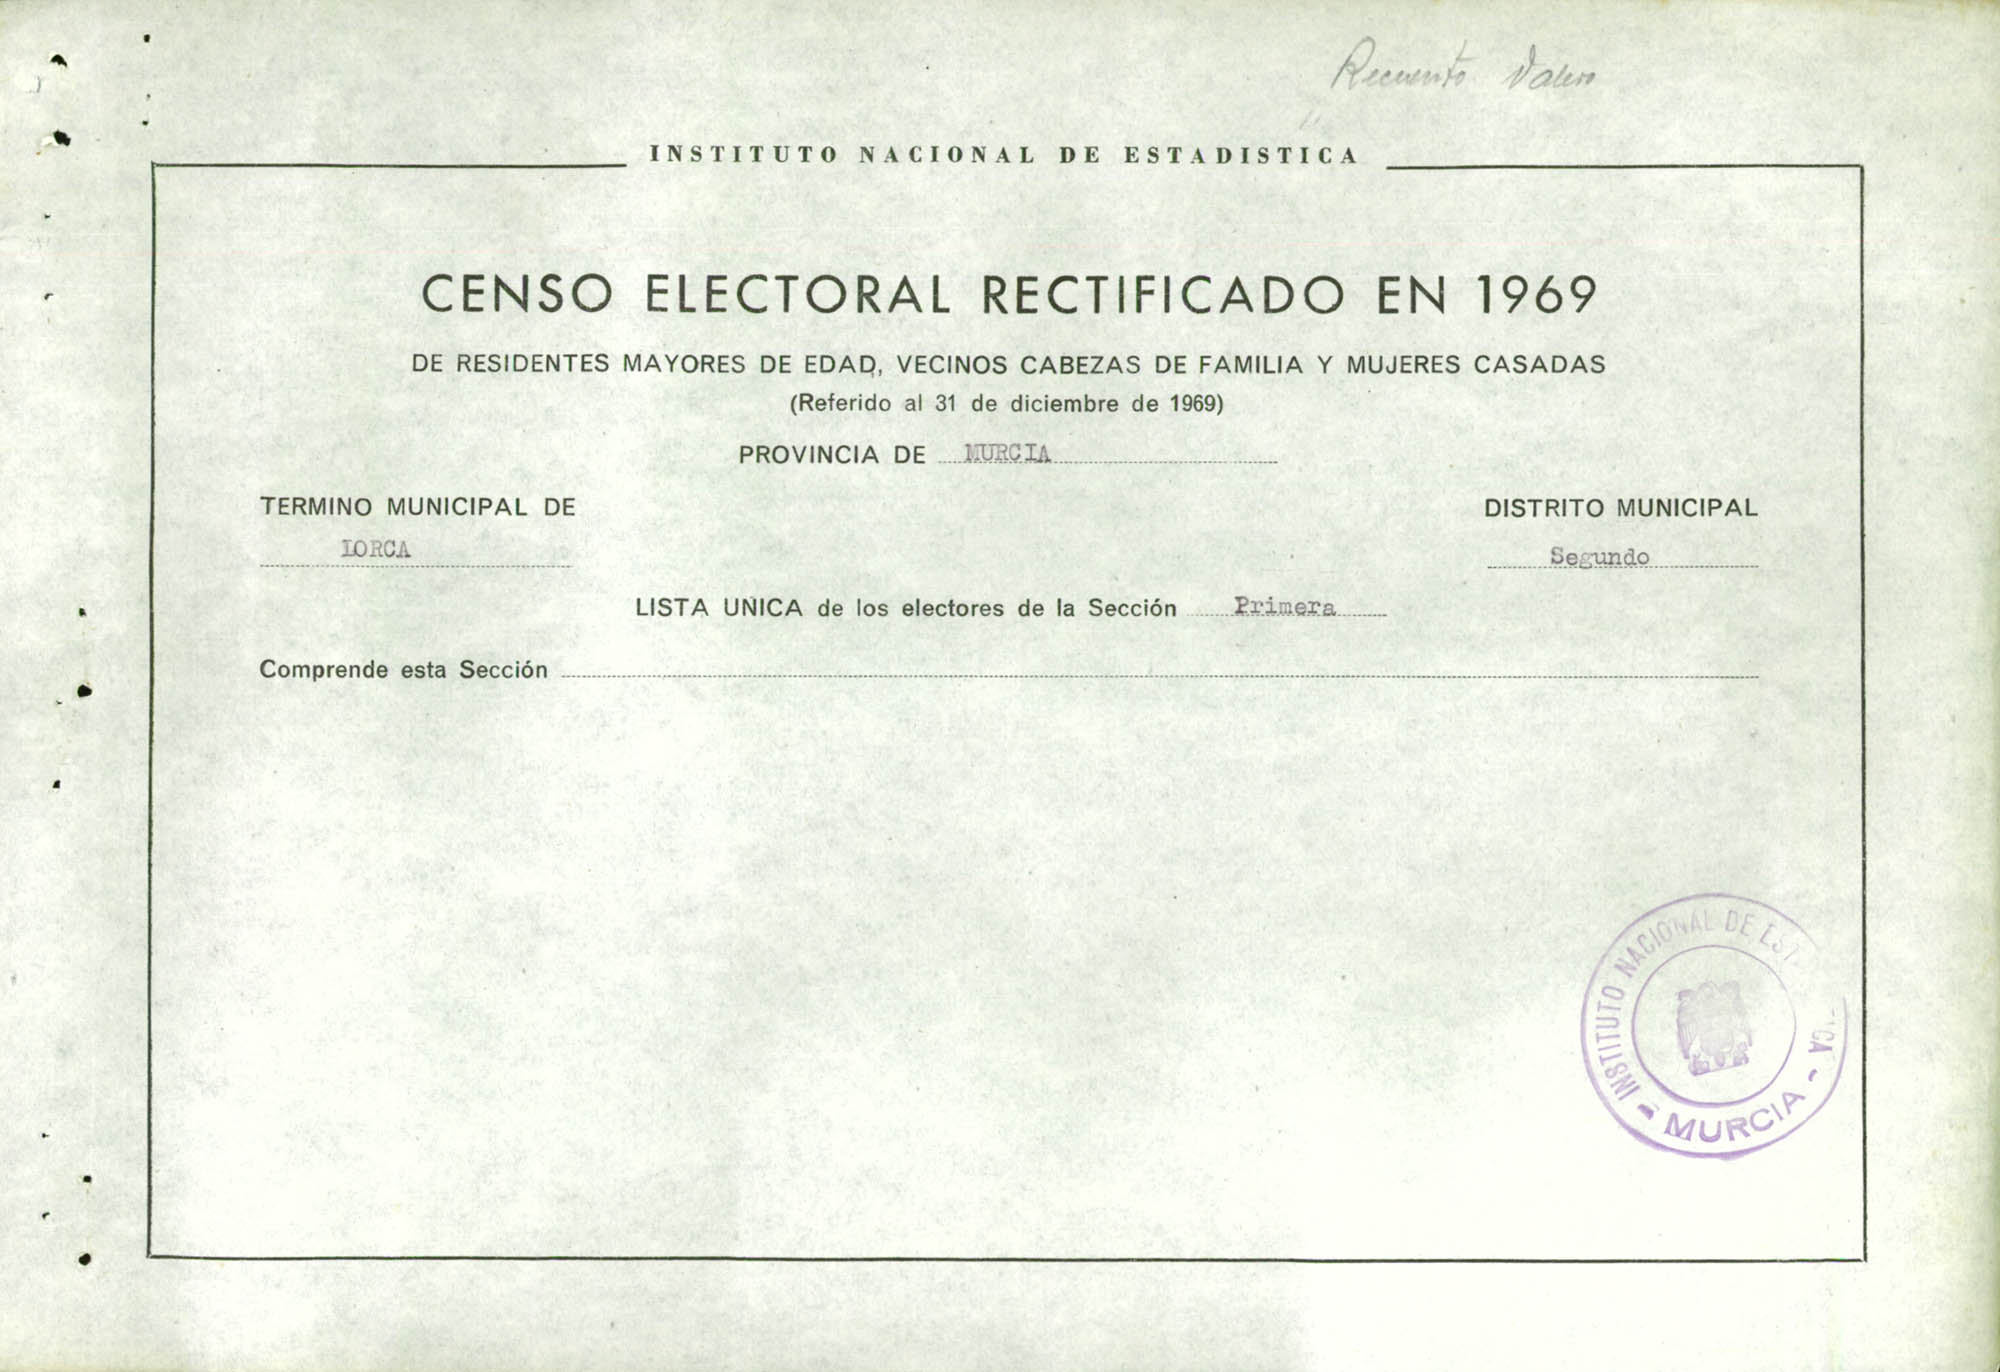 Censo electoral rectificado en 1969: listas definitivas de Lorca, Distrito 2º, sección 1ª.